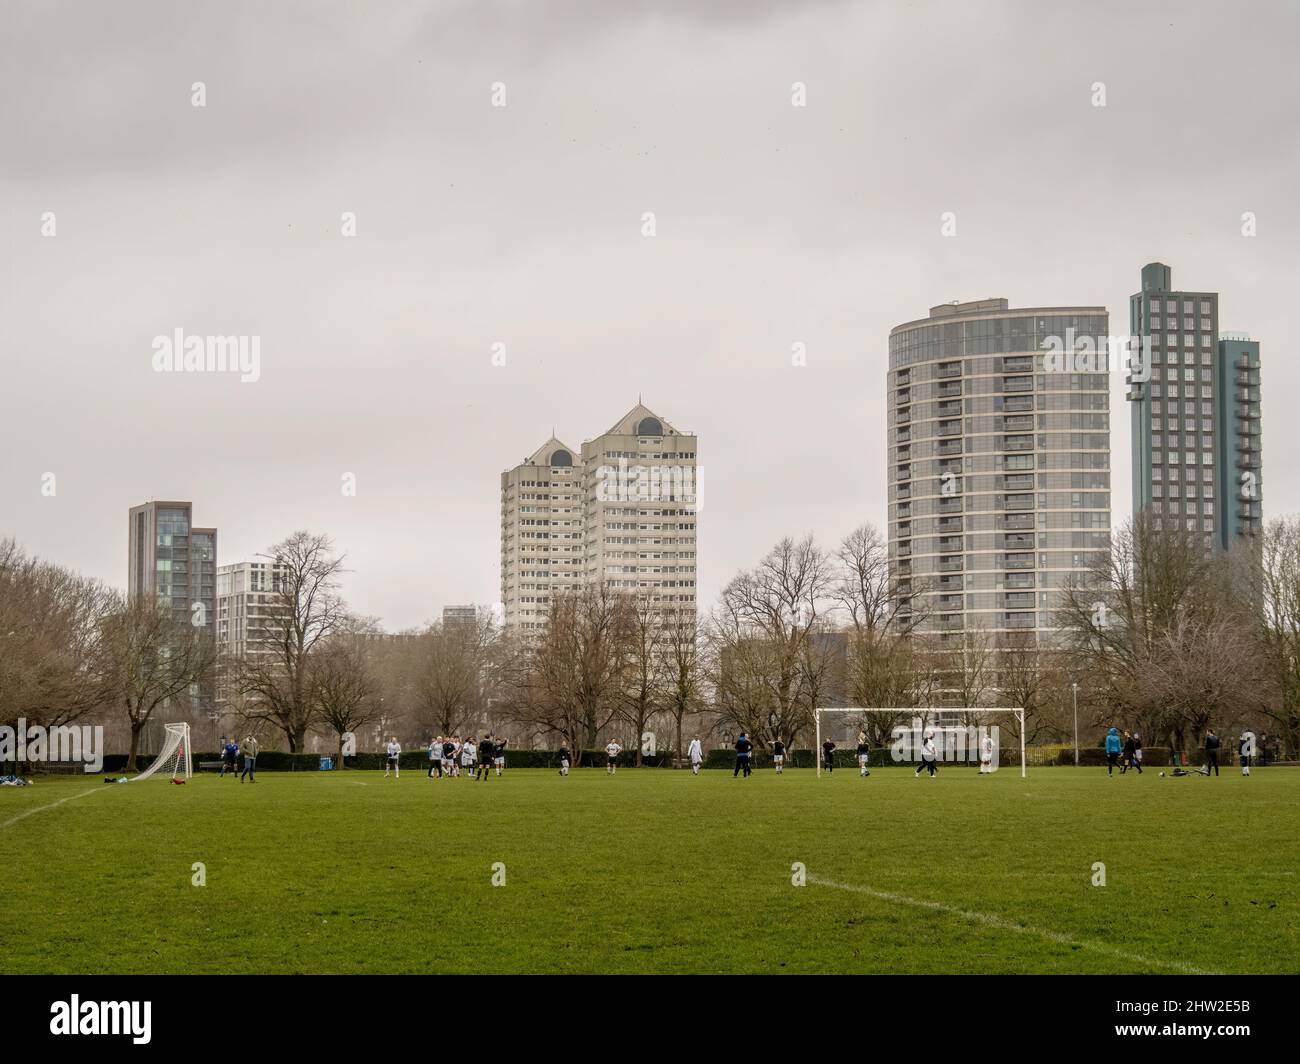 LONDON, ENGLAND - FEBRUAR 20 2022: Amateursport an einem Sonntag in einer städtischen Umgebung. Fußball, Fußball. Stockfoto